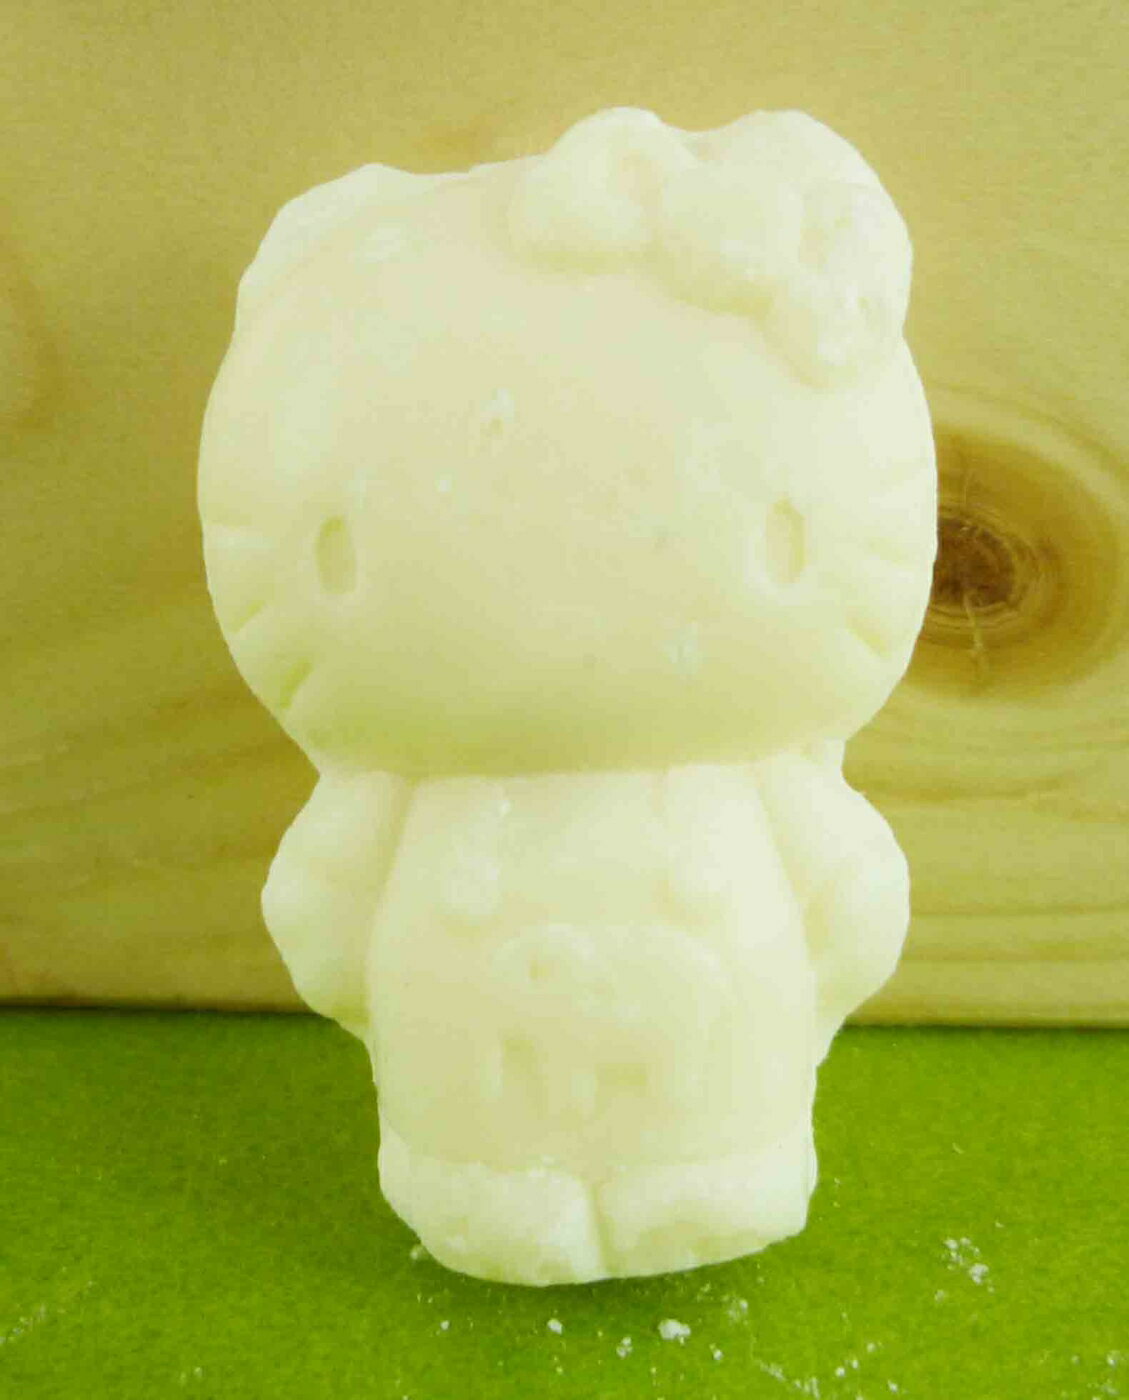 【震撼精品百貨】Hello Kitty 凱蒂貓 造型香皂 白【共1款】 震撼日式精品百貨